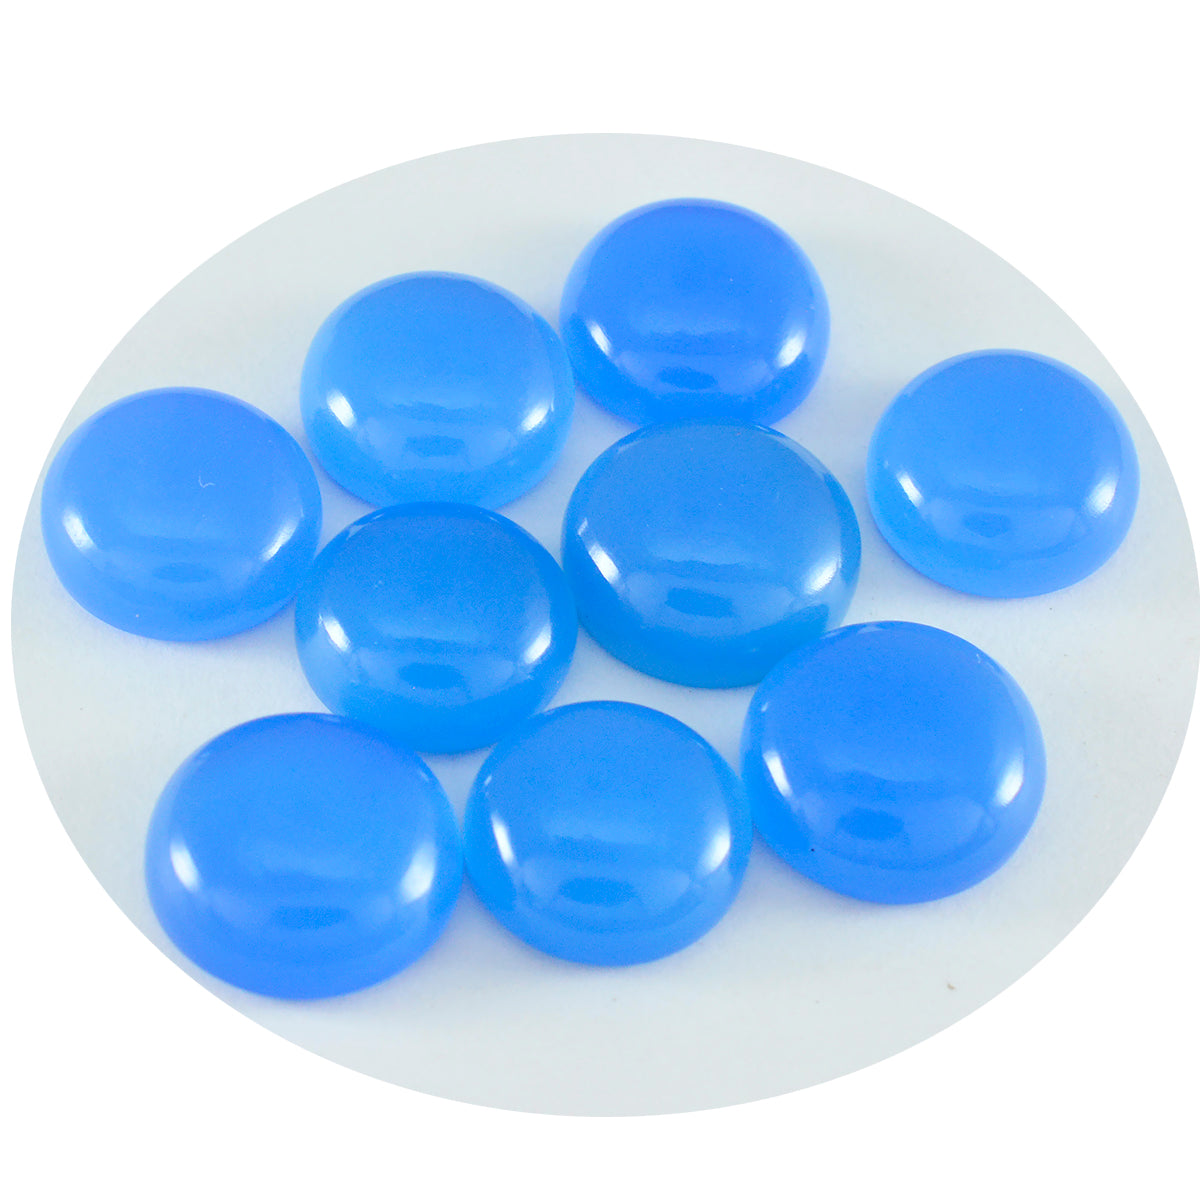 Riyogems 1PC blauwe chalcedoon cabochon 6x6 mm ronde vorm edelstenen van goede kwaliteit